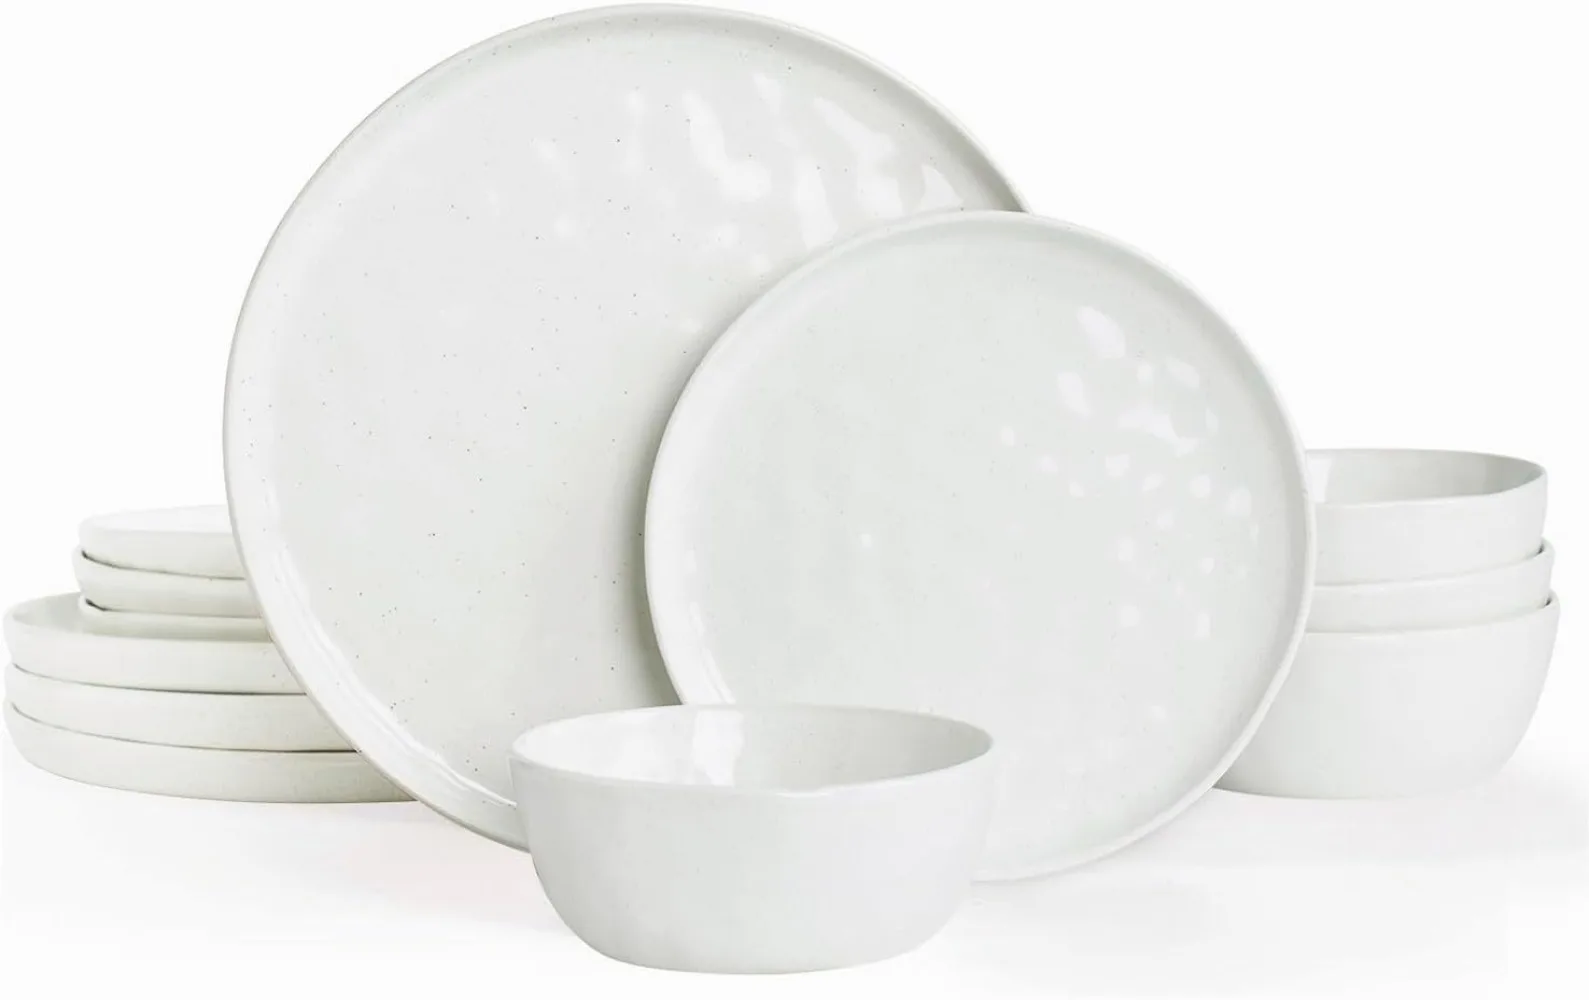 

Набор тарелок и мисок Famiware Mars, 12 предметов, набор посуды для 4